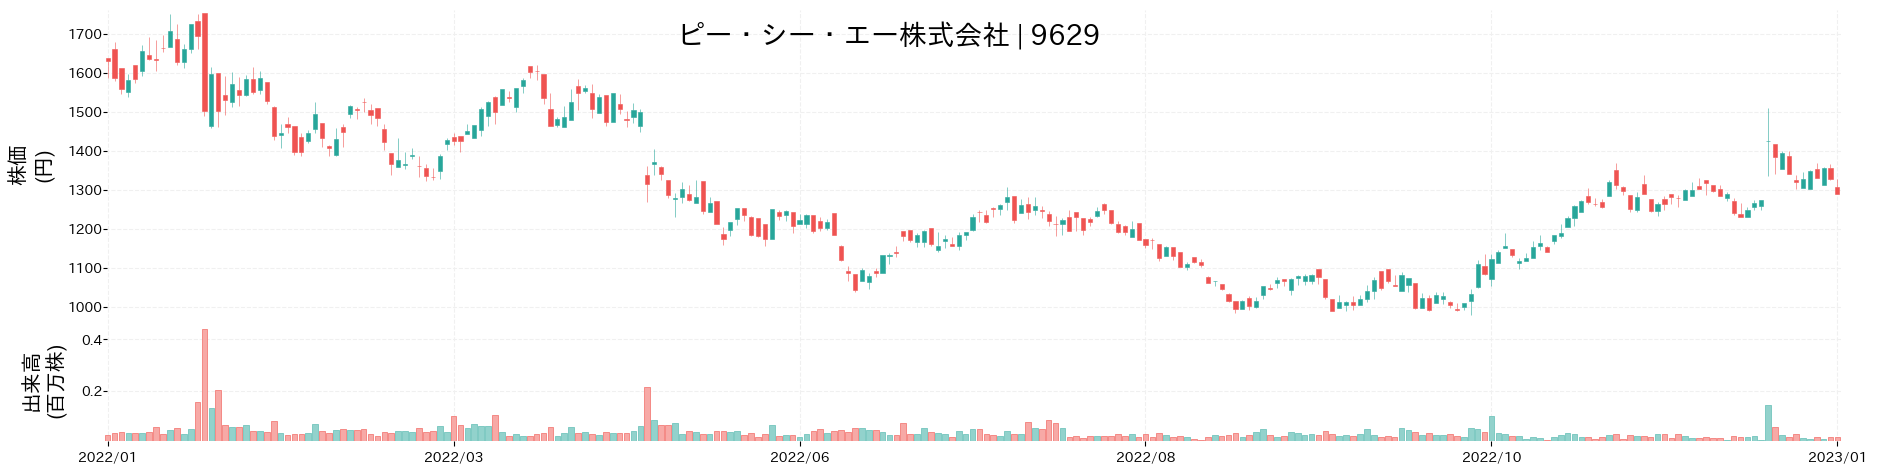 ピー・シー・エーの株価推移(2022)